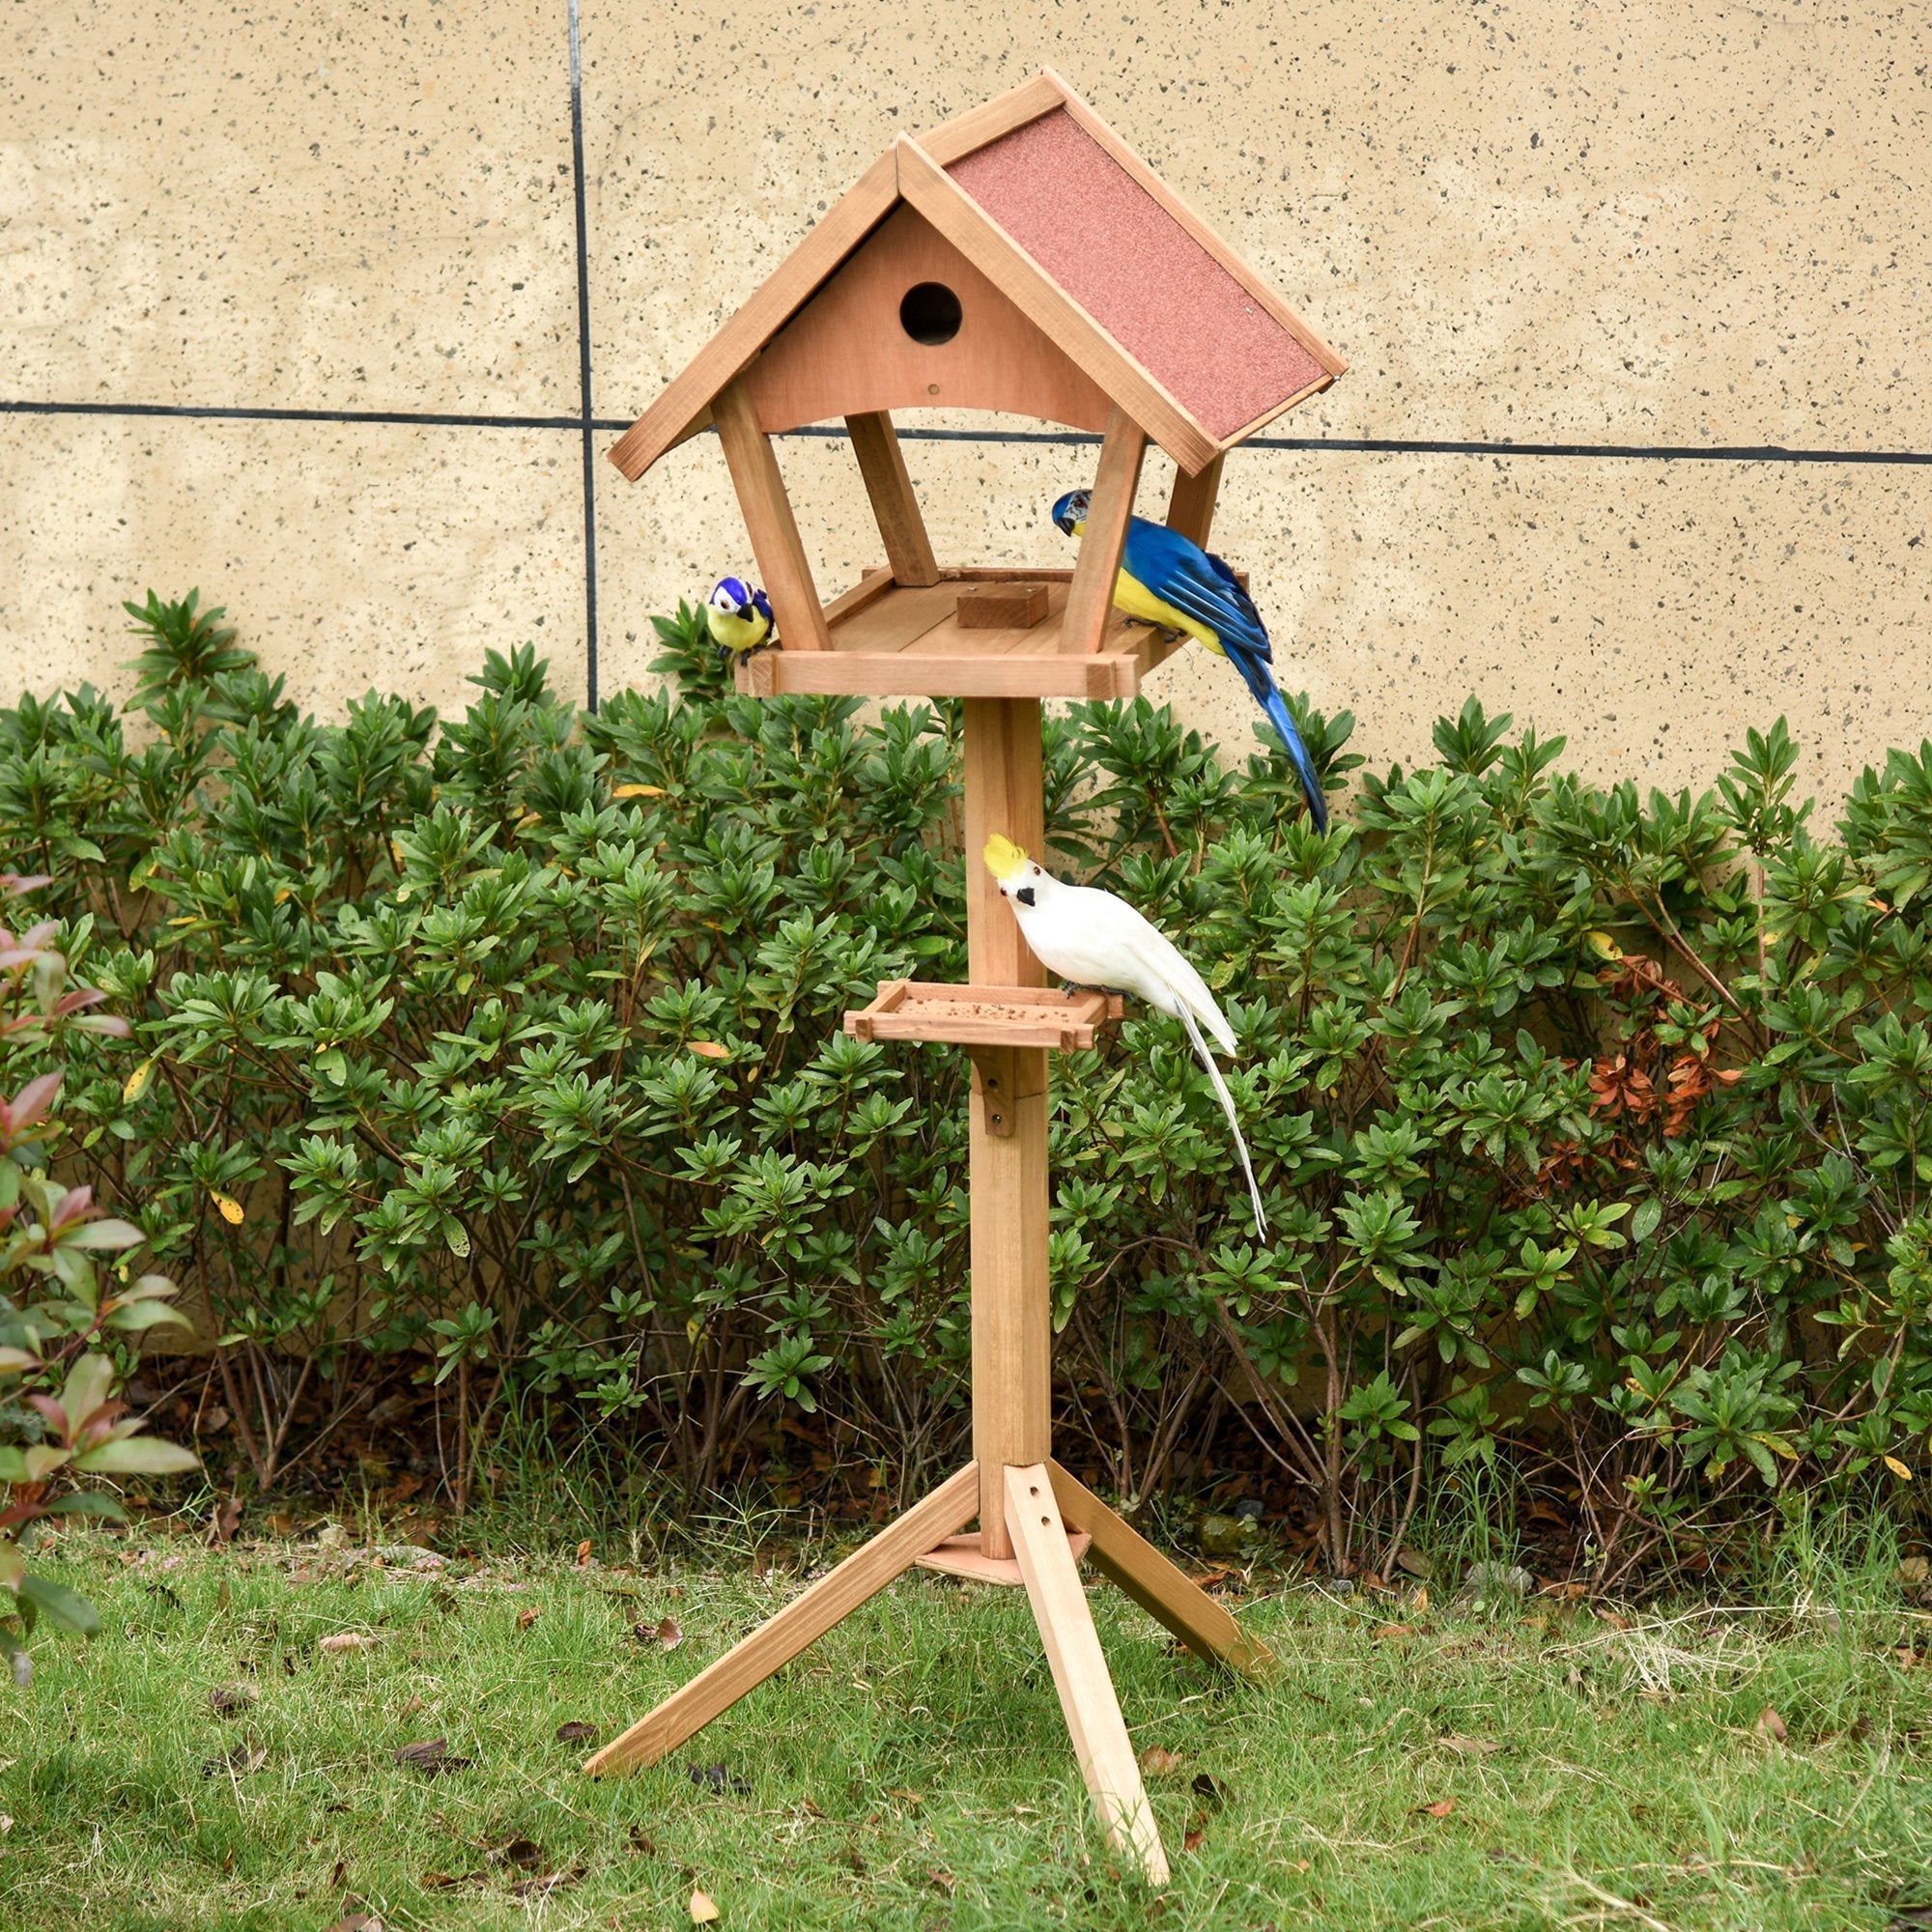 Wooden Garden Bird Feeder Stand - Weatherproof, 49x45x139cm, PawHut,